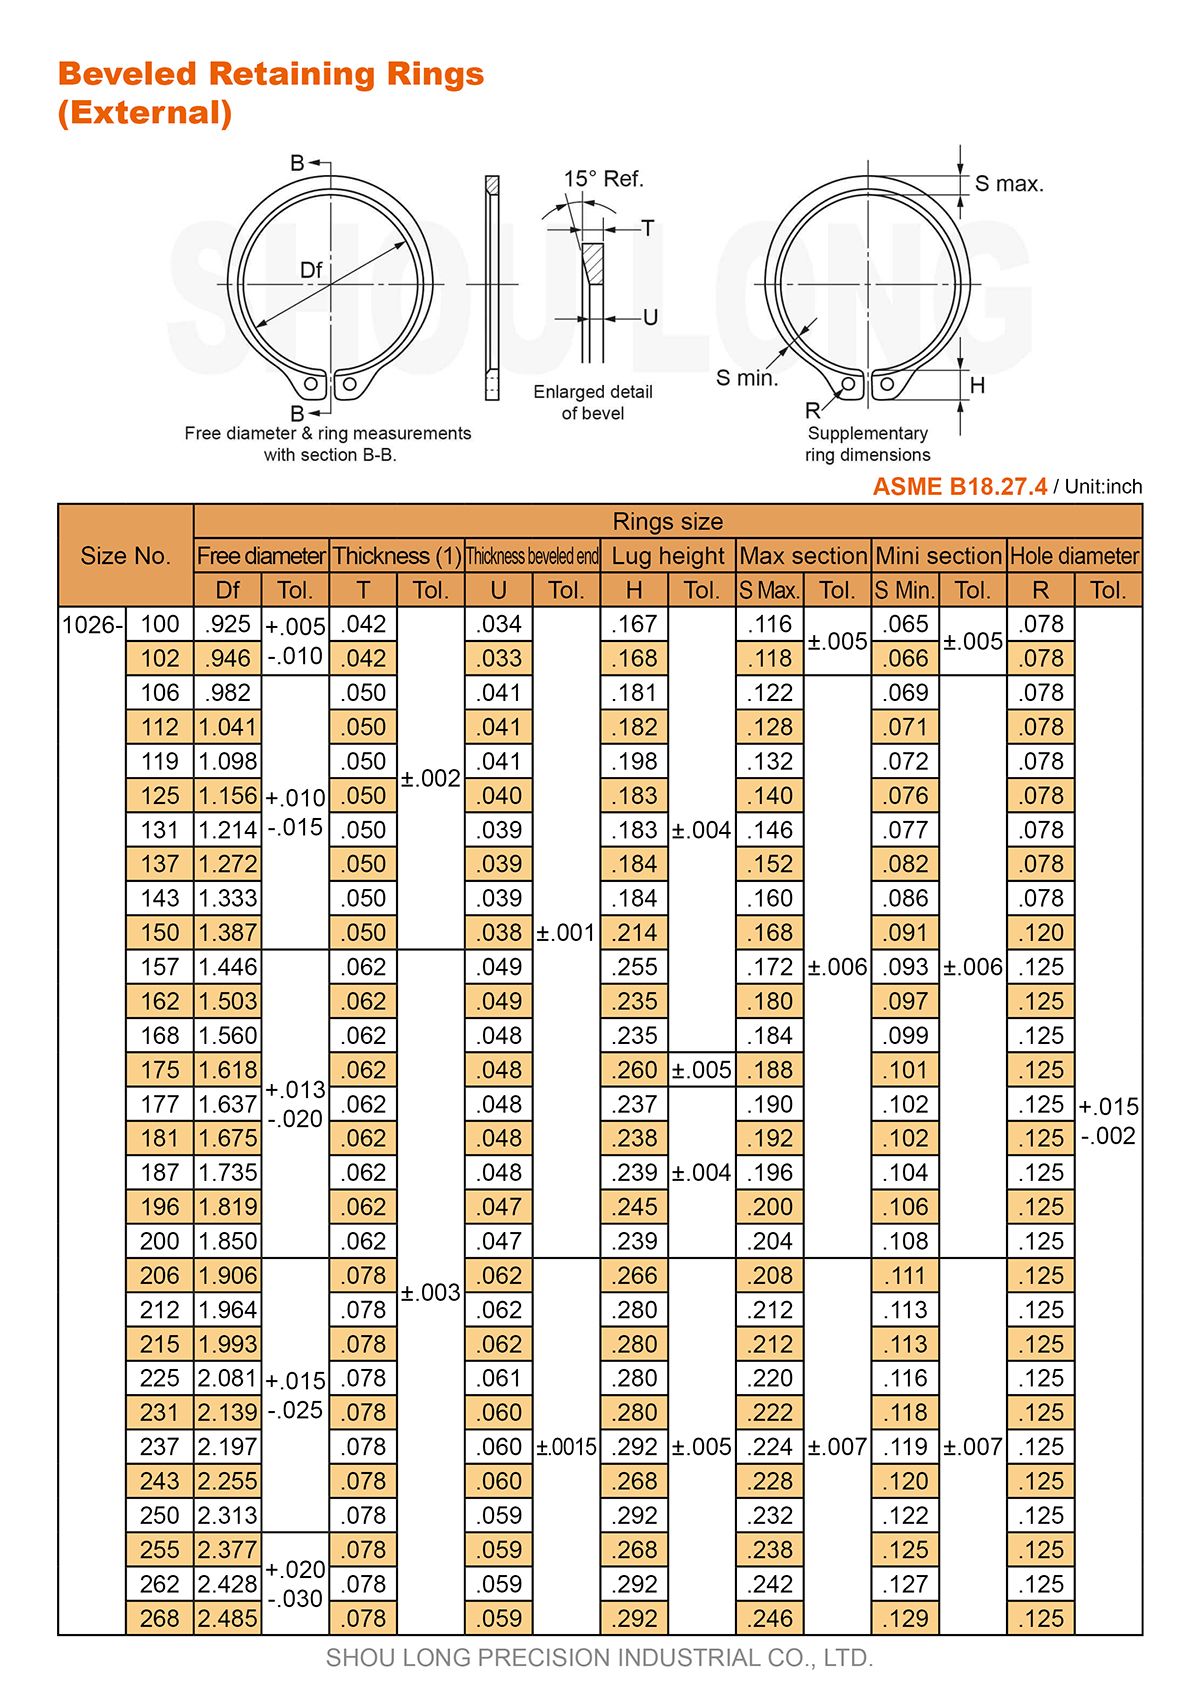 Spesifikasi Cincin Penahan Beveled Inch untuk Poros ASME/ANSI B18.27.4-1